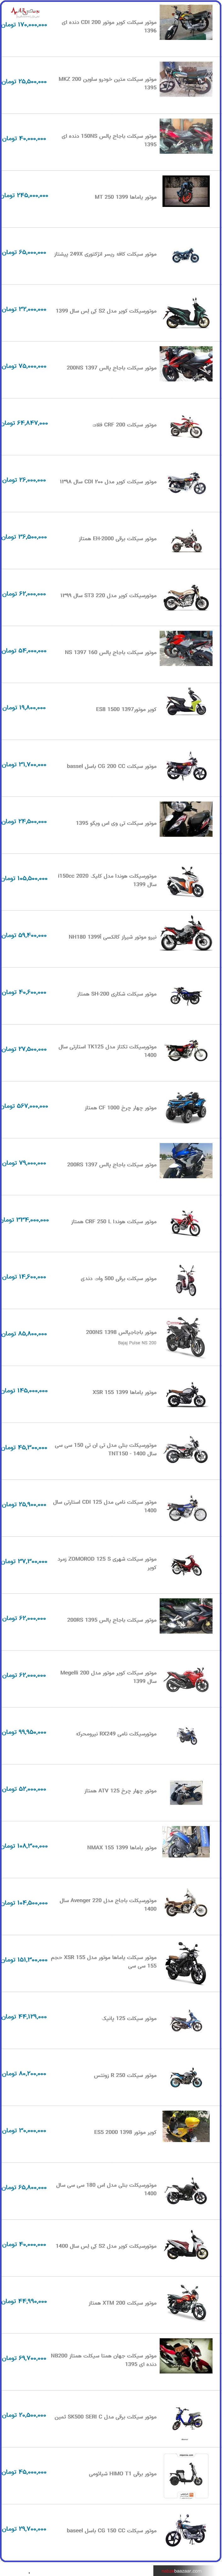 قیمت به روز موتورسیکلت در نبض بازار ایران ۲۲ دی ۱۴۰۰